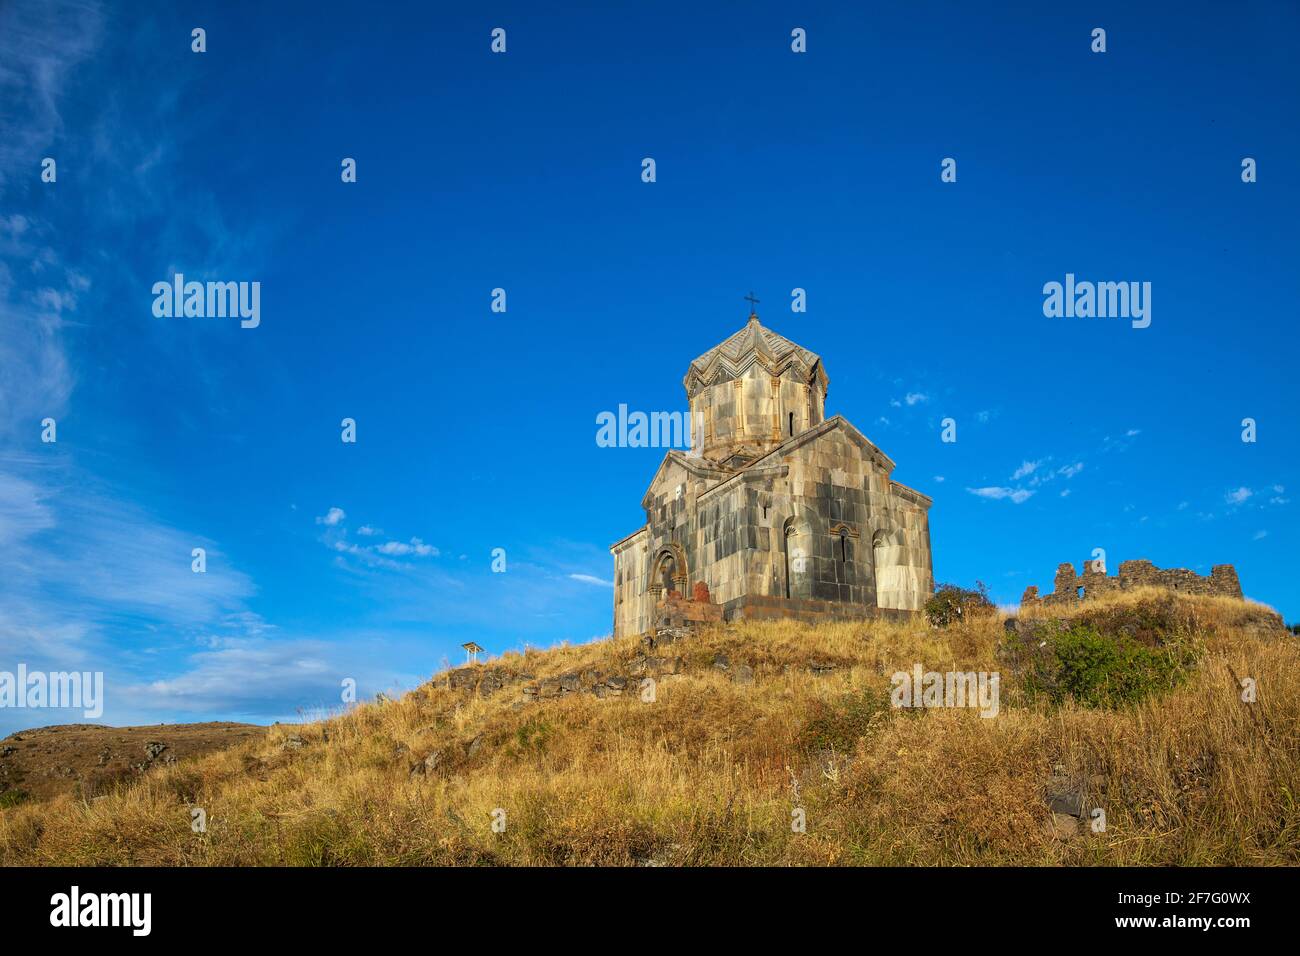 Armenia, Aragatsotn, Ereván, la Iglesia de Surb Astvatsatsin conocida también como Iglesia fortaleza Amberd Vahramashen ubicado en las laderas del Monte Aragats, Foto de stock